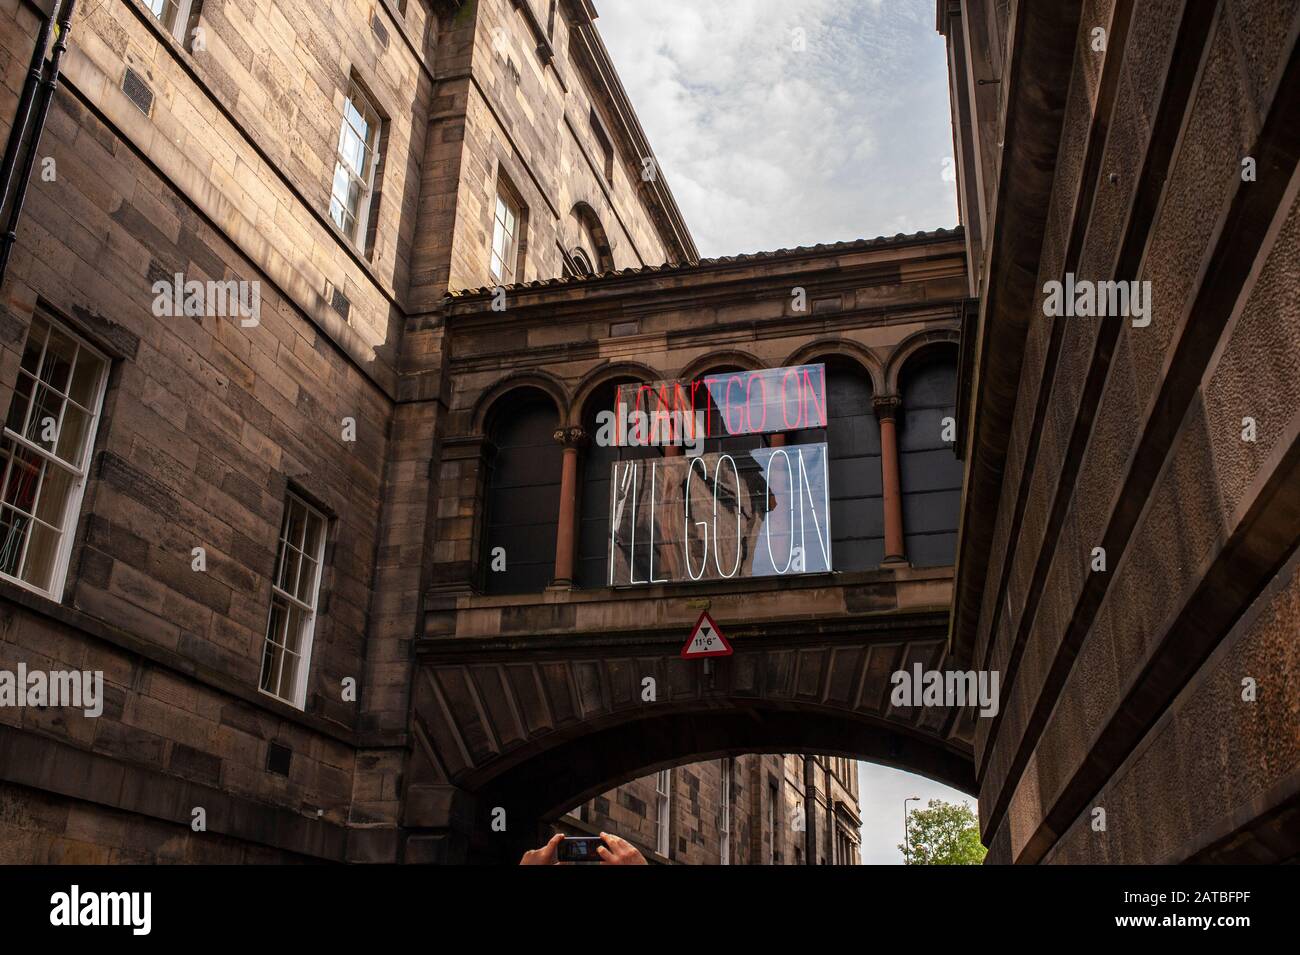 Verbindungsbrücke zwischen der Talbot Rice Gallery und Dem National Museum of Scotland. Stadtbild/Reisefotografie von Edinburgh von Pep Masip. Stockfoto